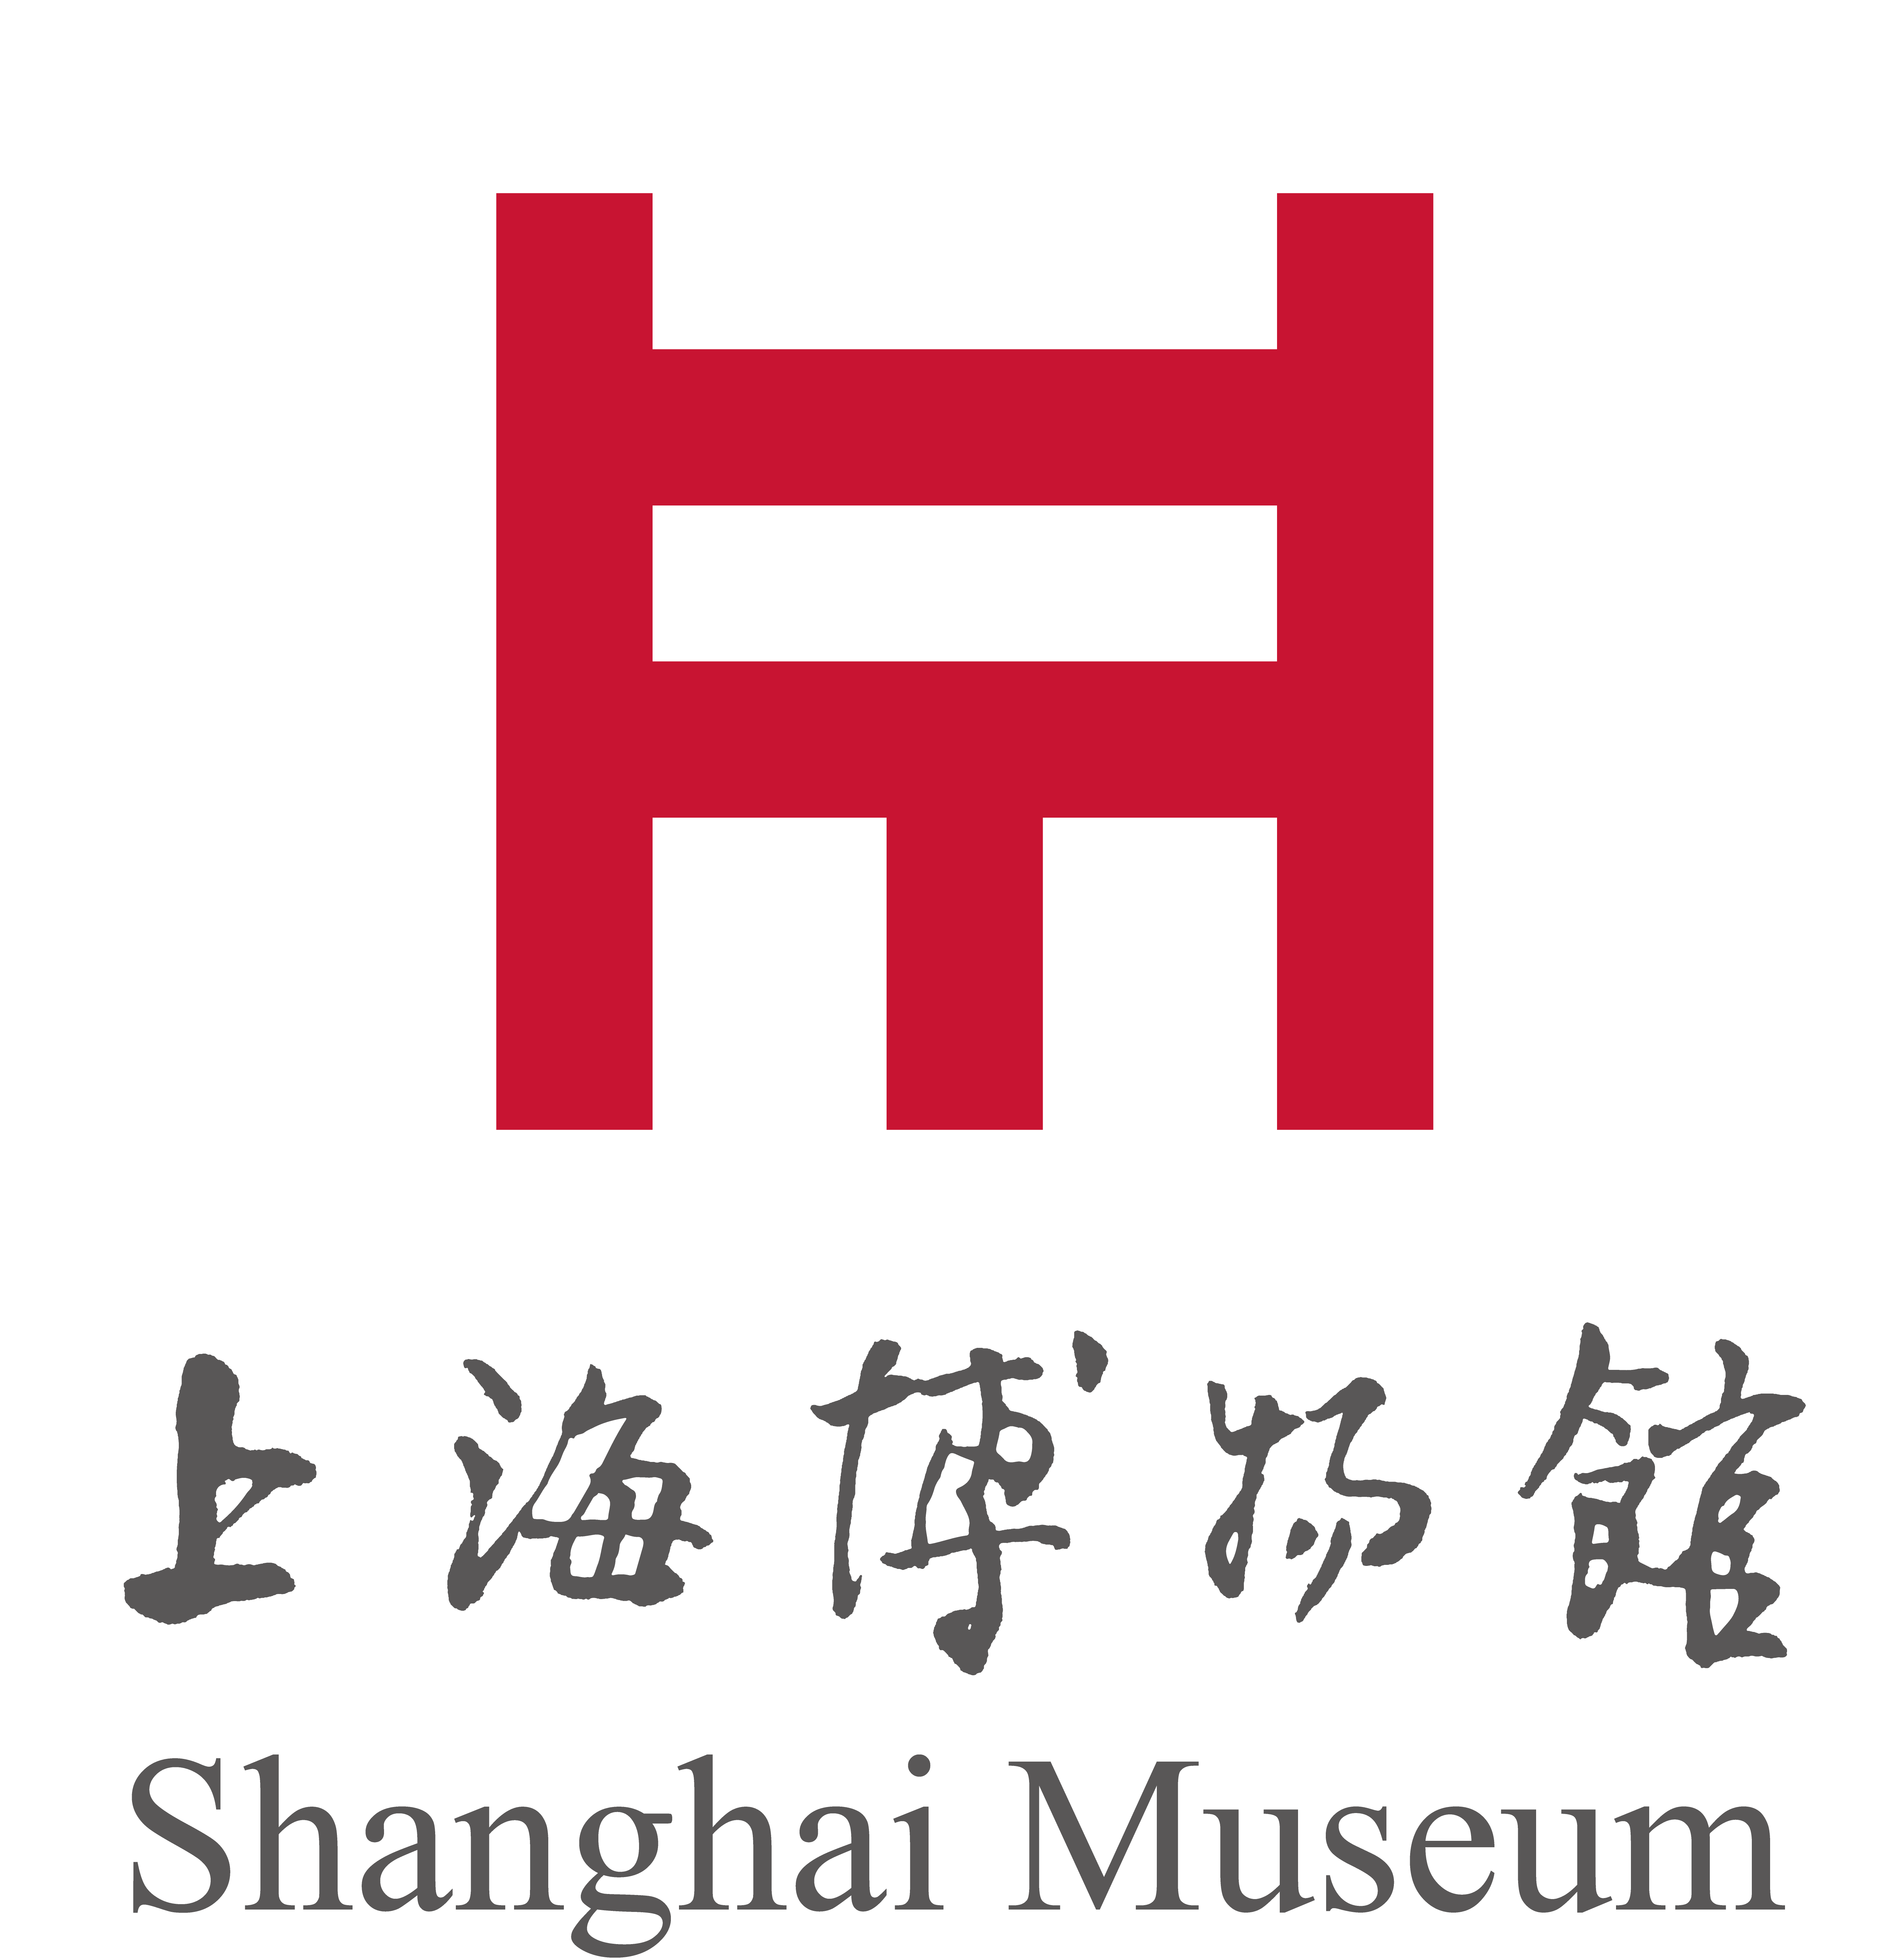  Shanghai Museum